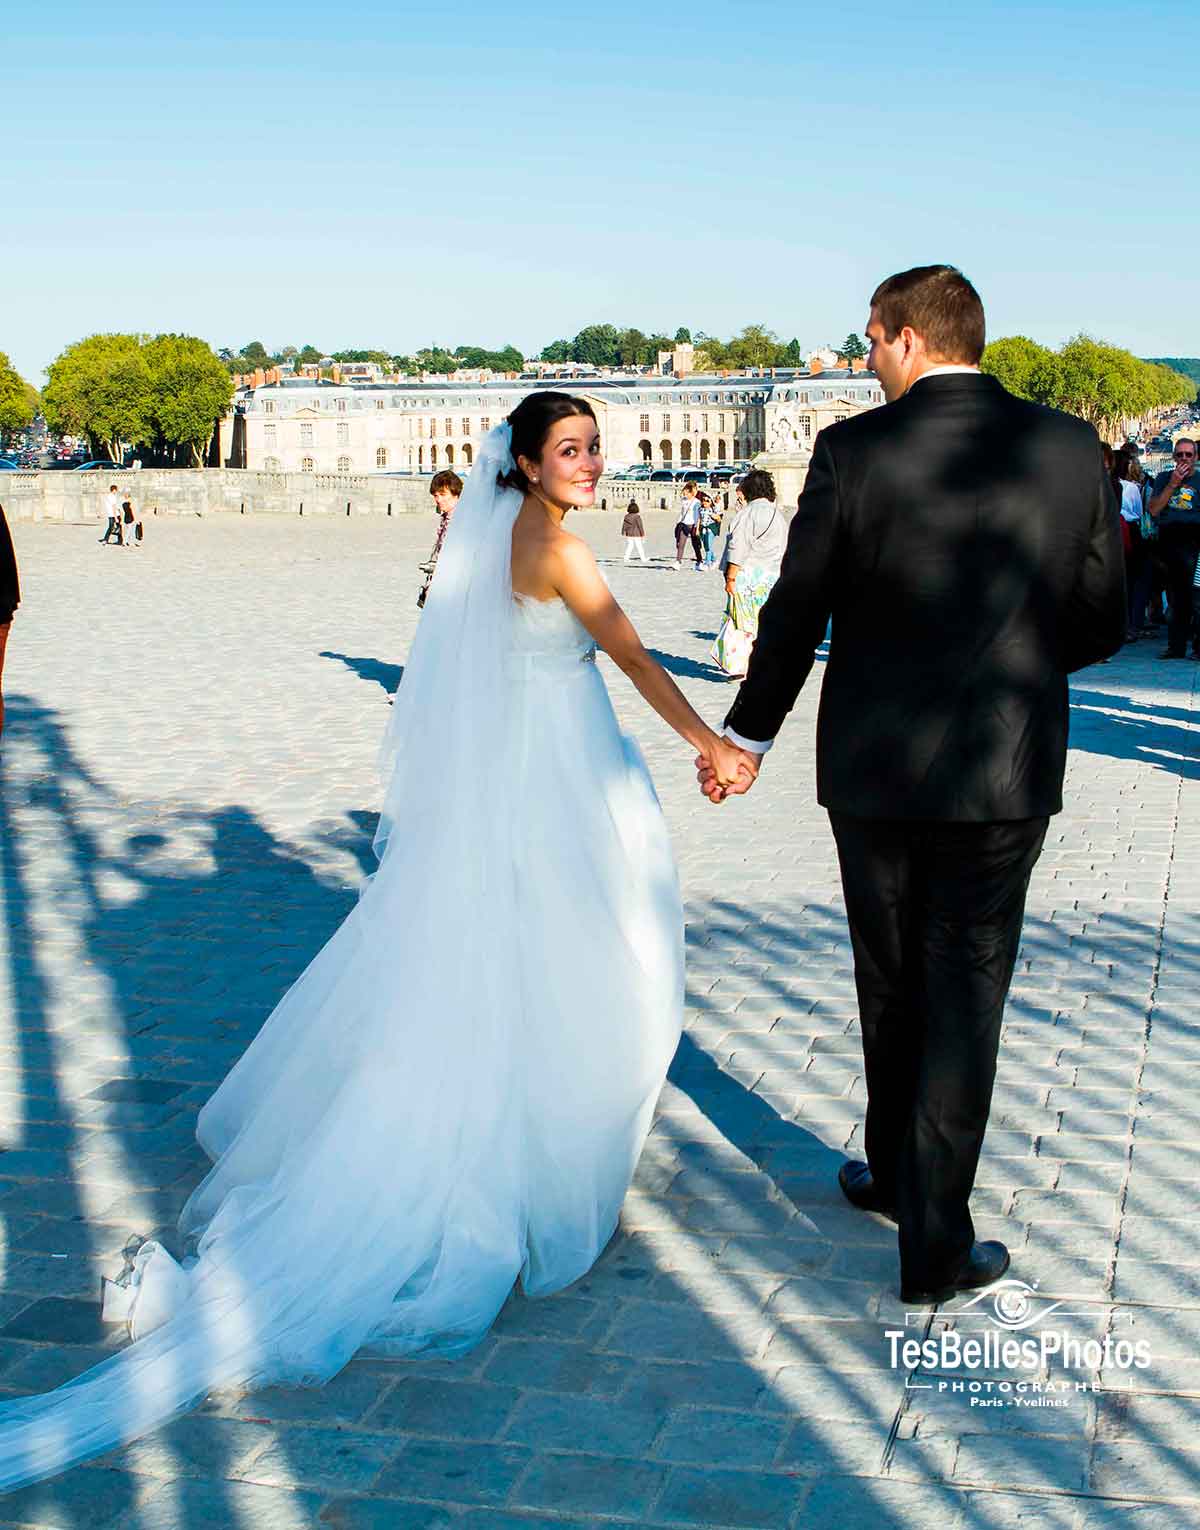 Photographe mariage Versailles, reportage photos de mariage à Versailles et en Yvelines, Bois-d'Arcy, Voisins-le-Bretonneux, Montigny-le-Bretonneux